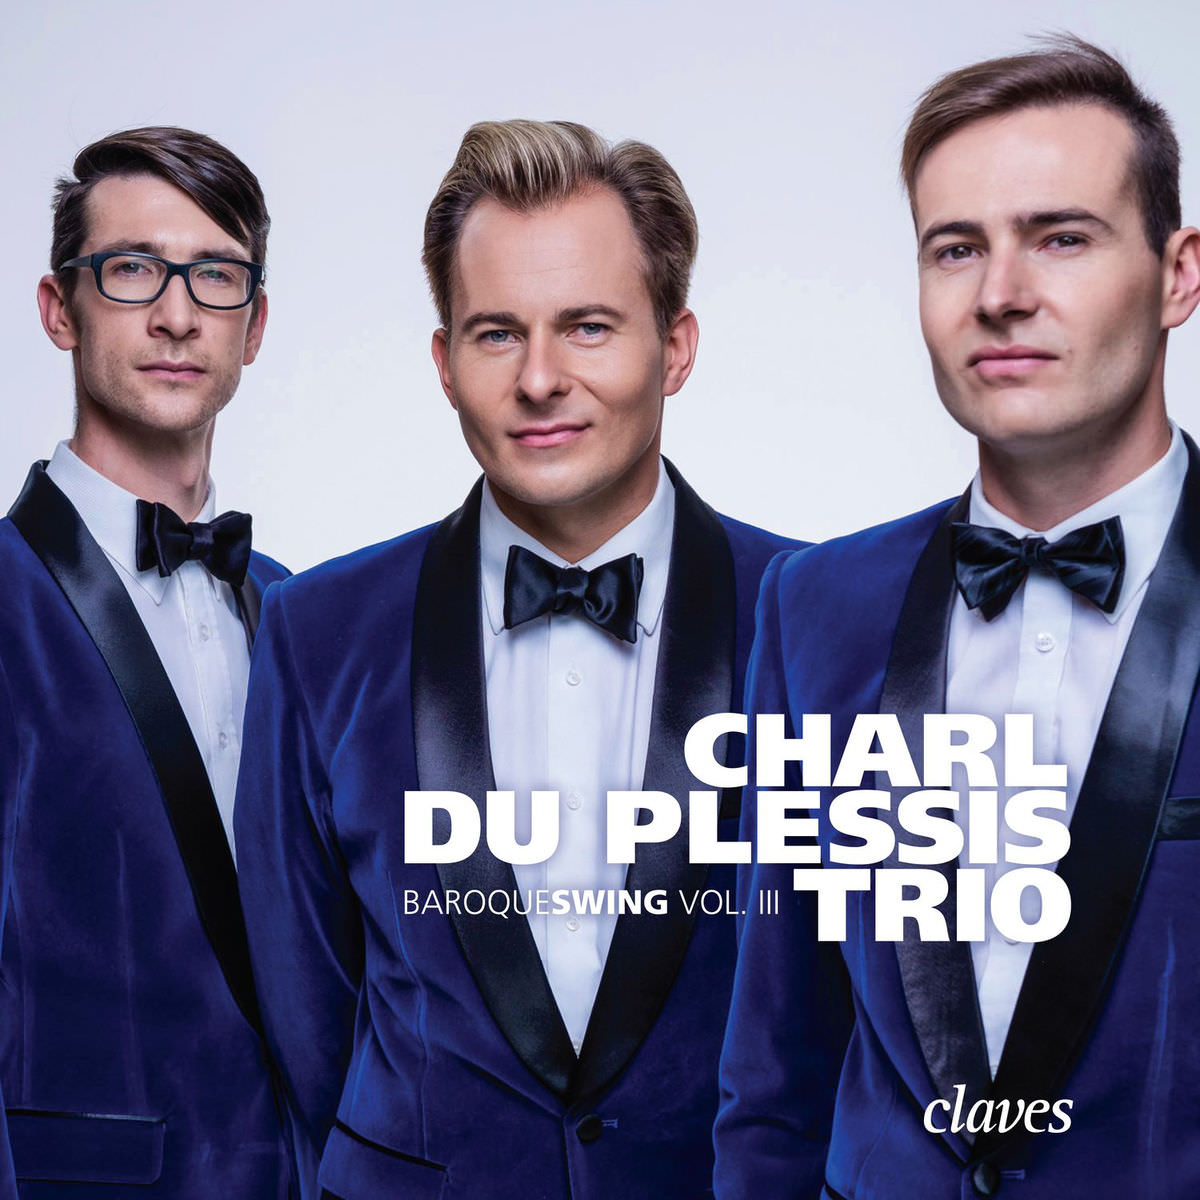 Charl du Plessis Trio - Baroqueswing, Vol. 3 (2018) [FLAC 24bit/192kHz]